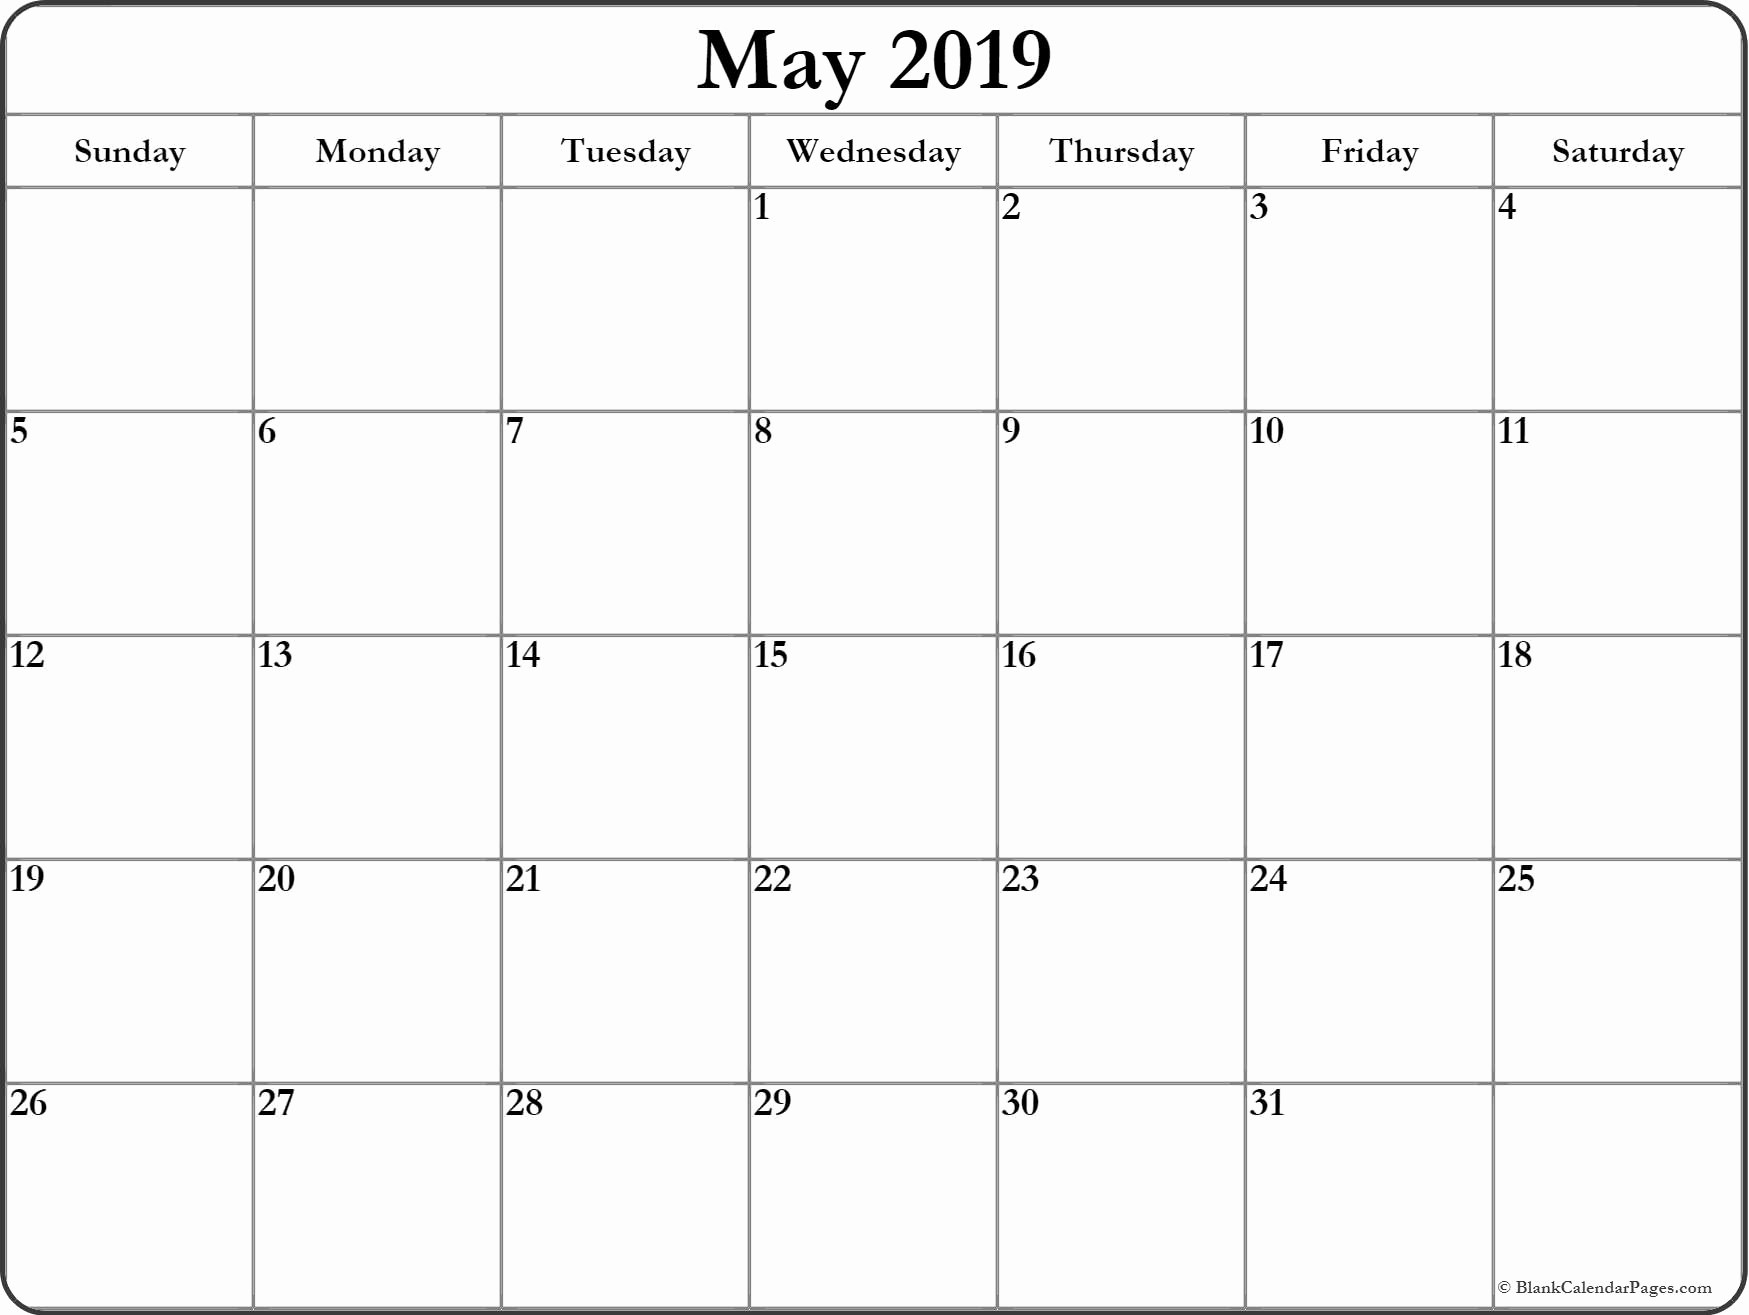 Free Printable Weekly Calendar 2019 Best Of May 2019 Blank Calendar Templates